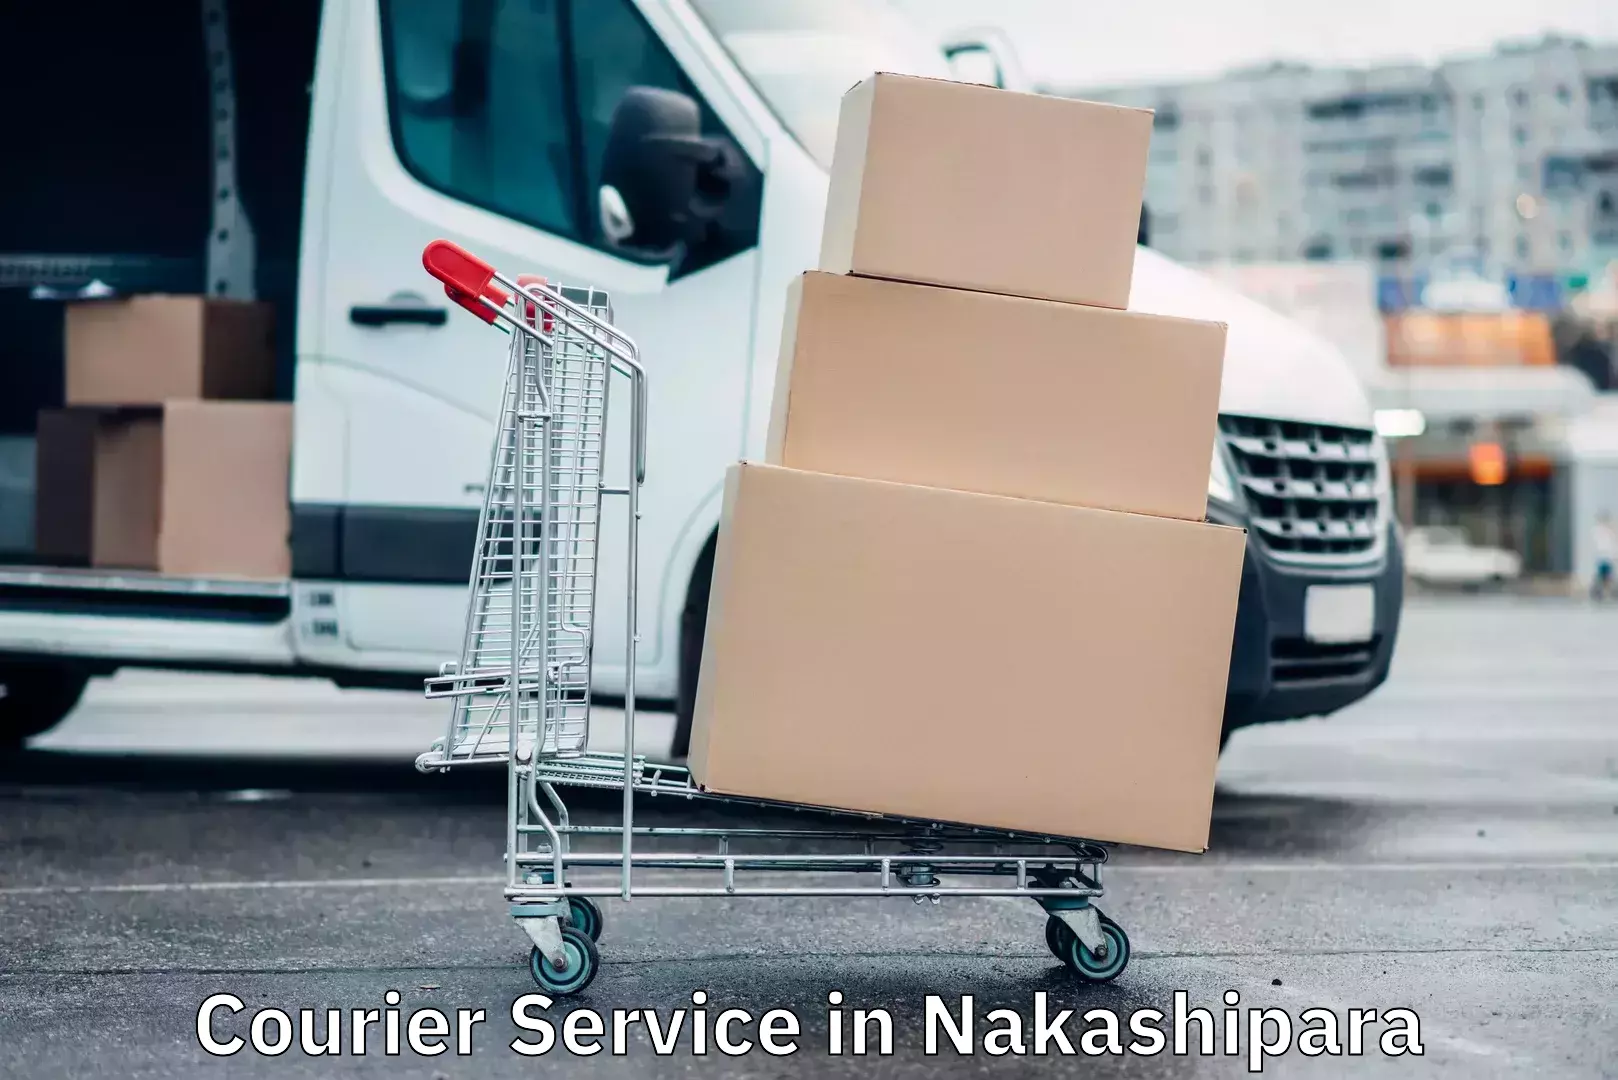 High-capacity shipping options in Nakashipara